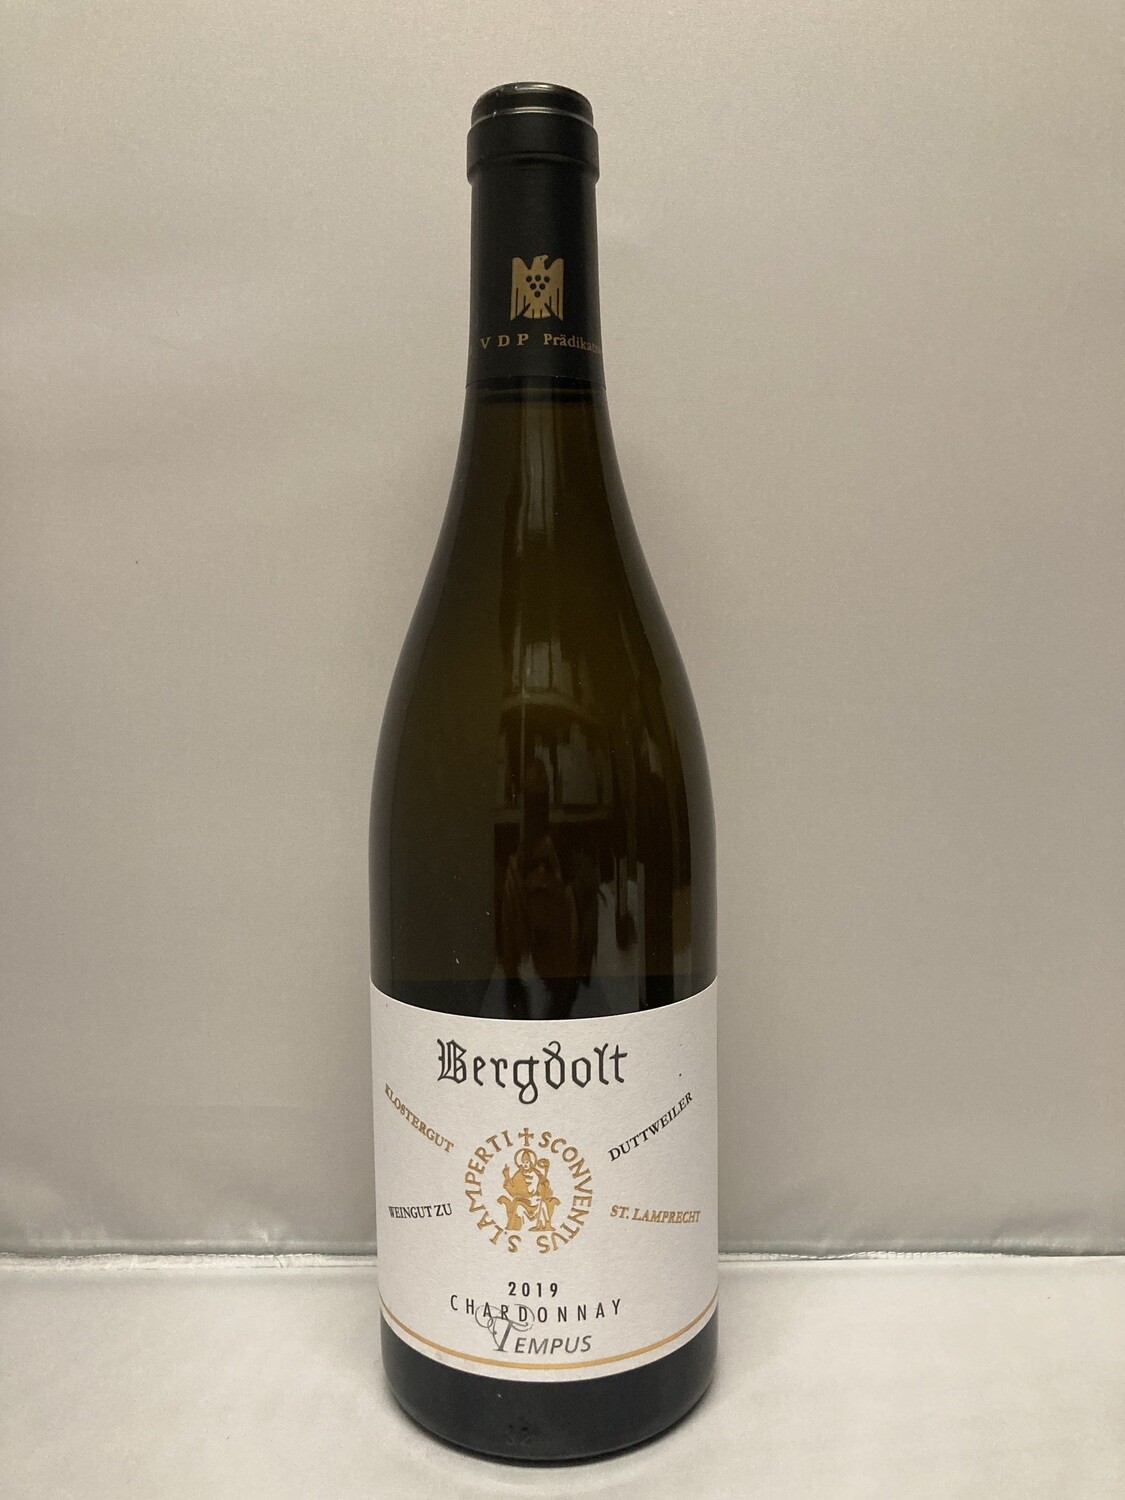 Chardonnay-2019 droog Tempus Bergdolt (Pfalz)